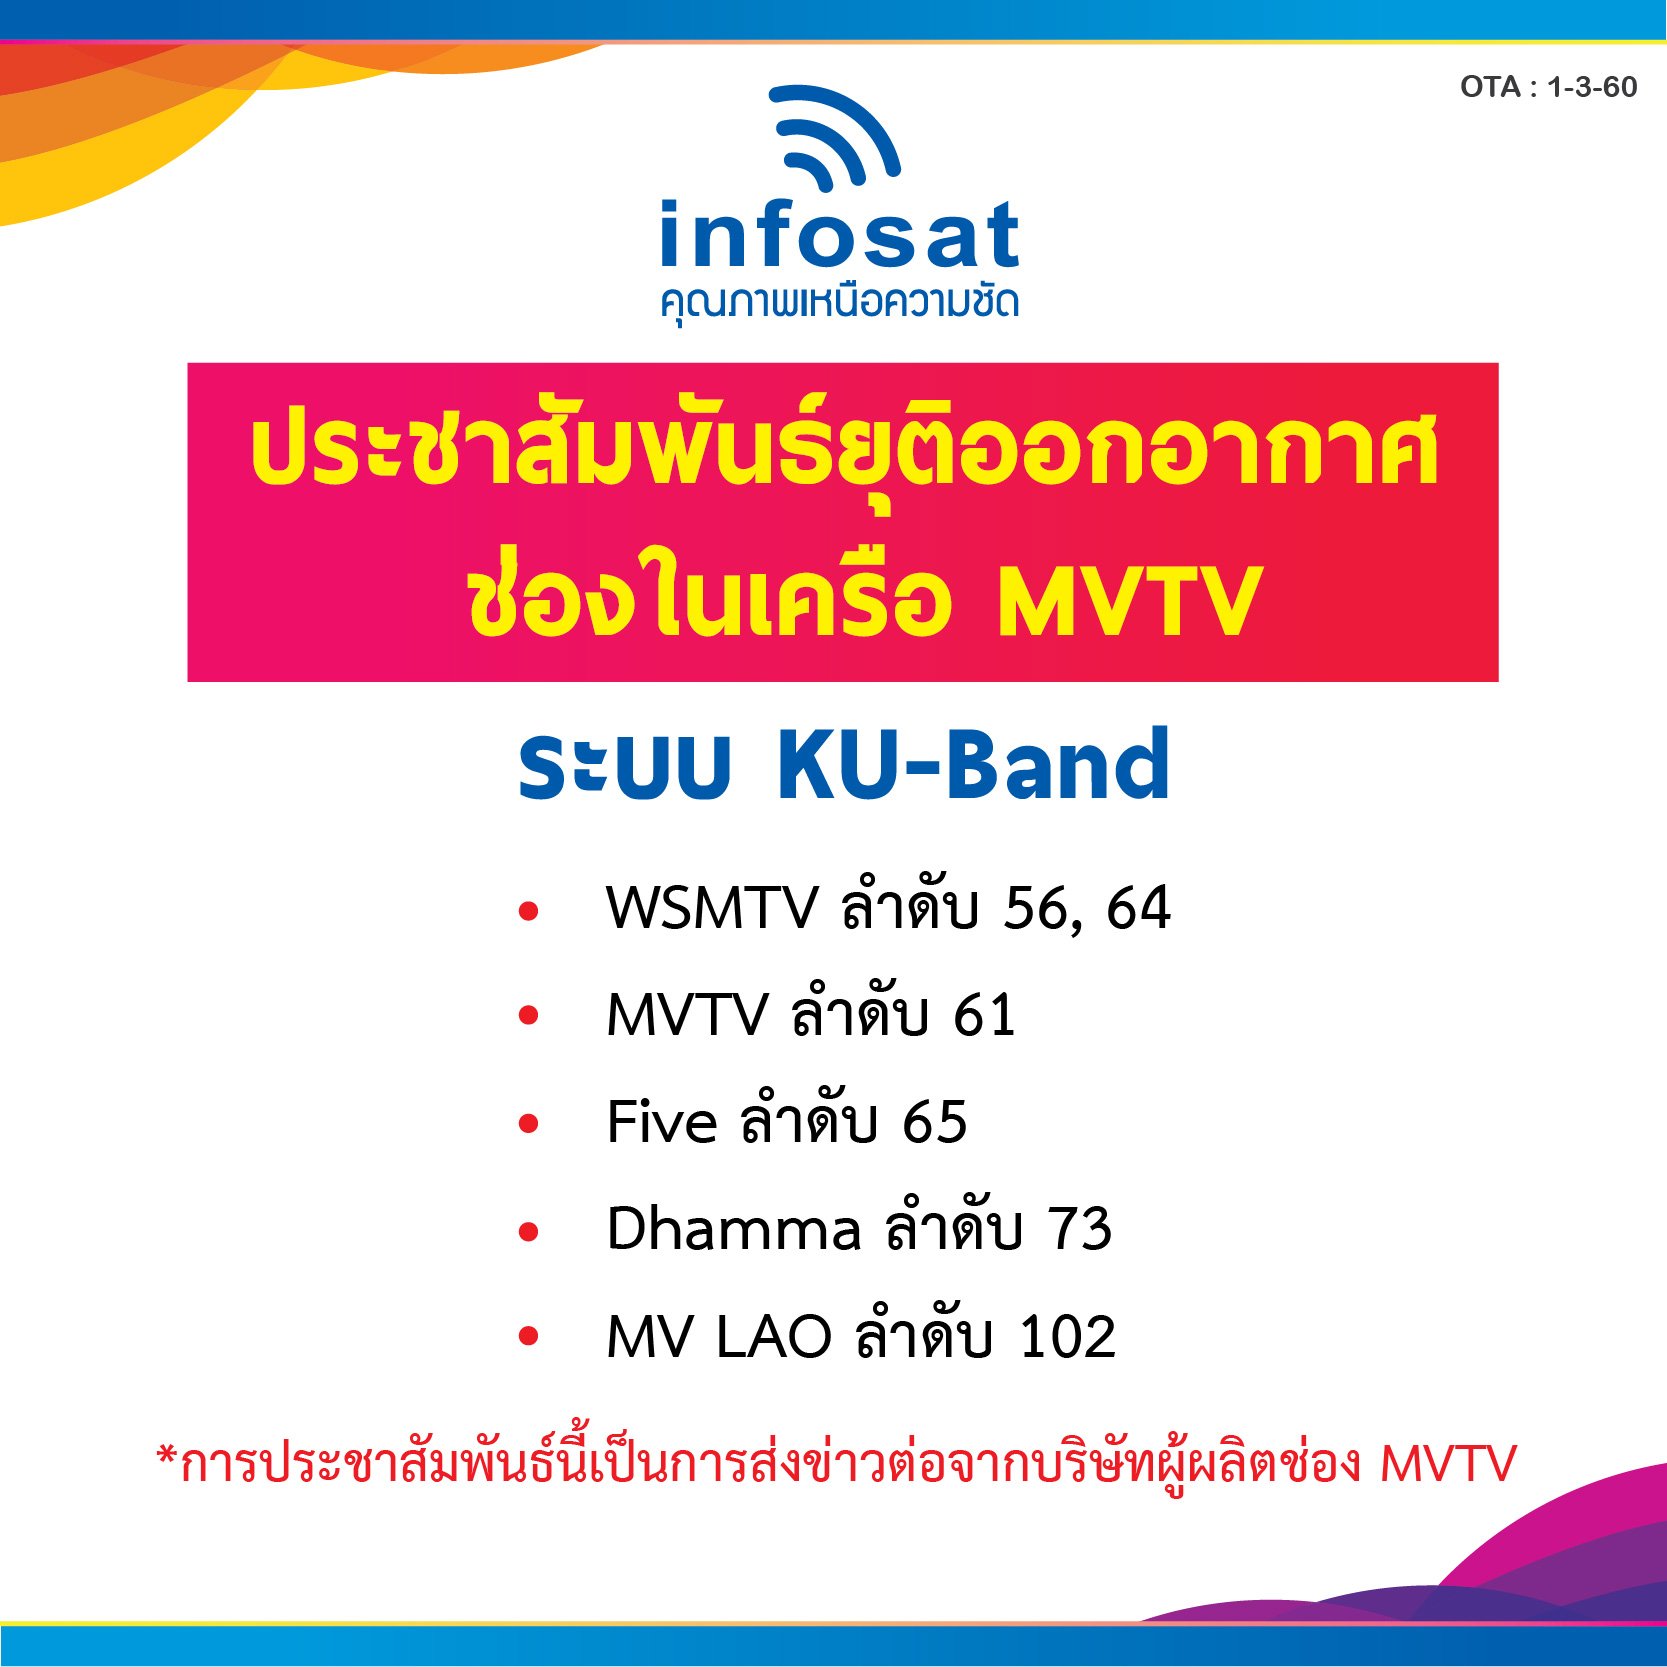 ประชาสัมพันธ์ยุติออกอากาศ ช่องในเครือ MVTV ในระบบ KU-Band